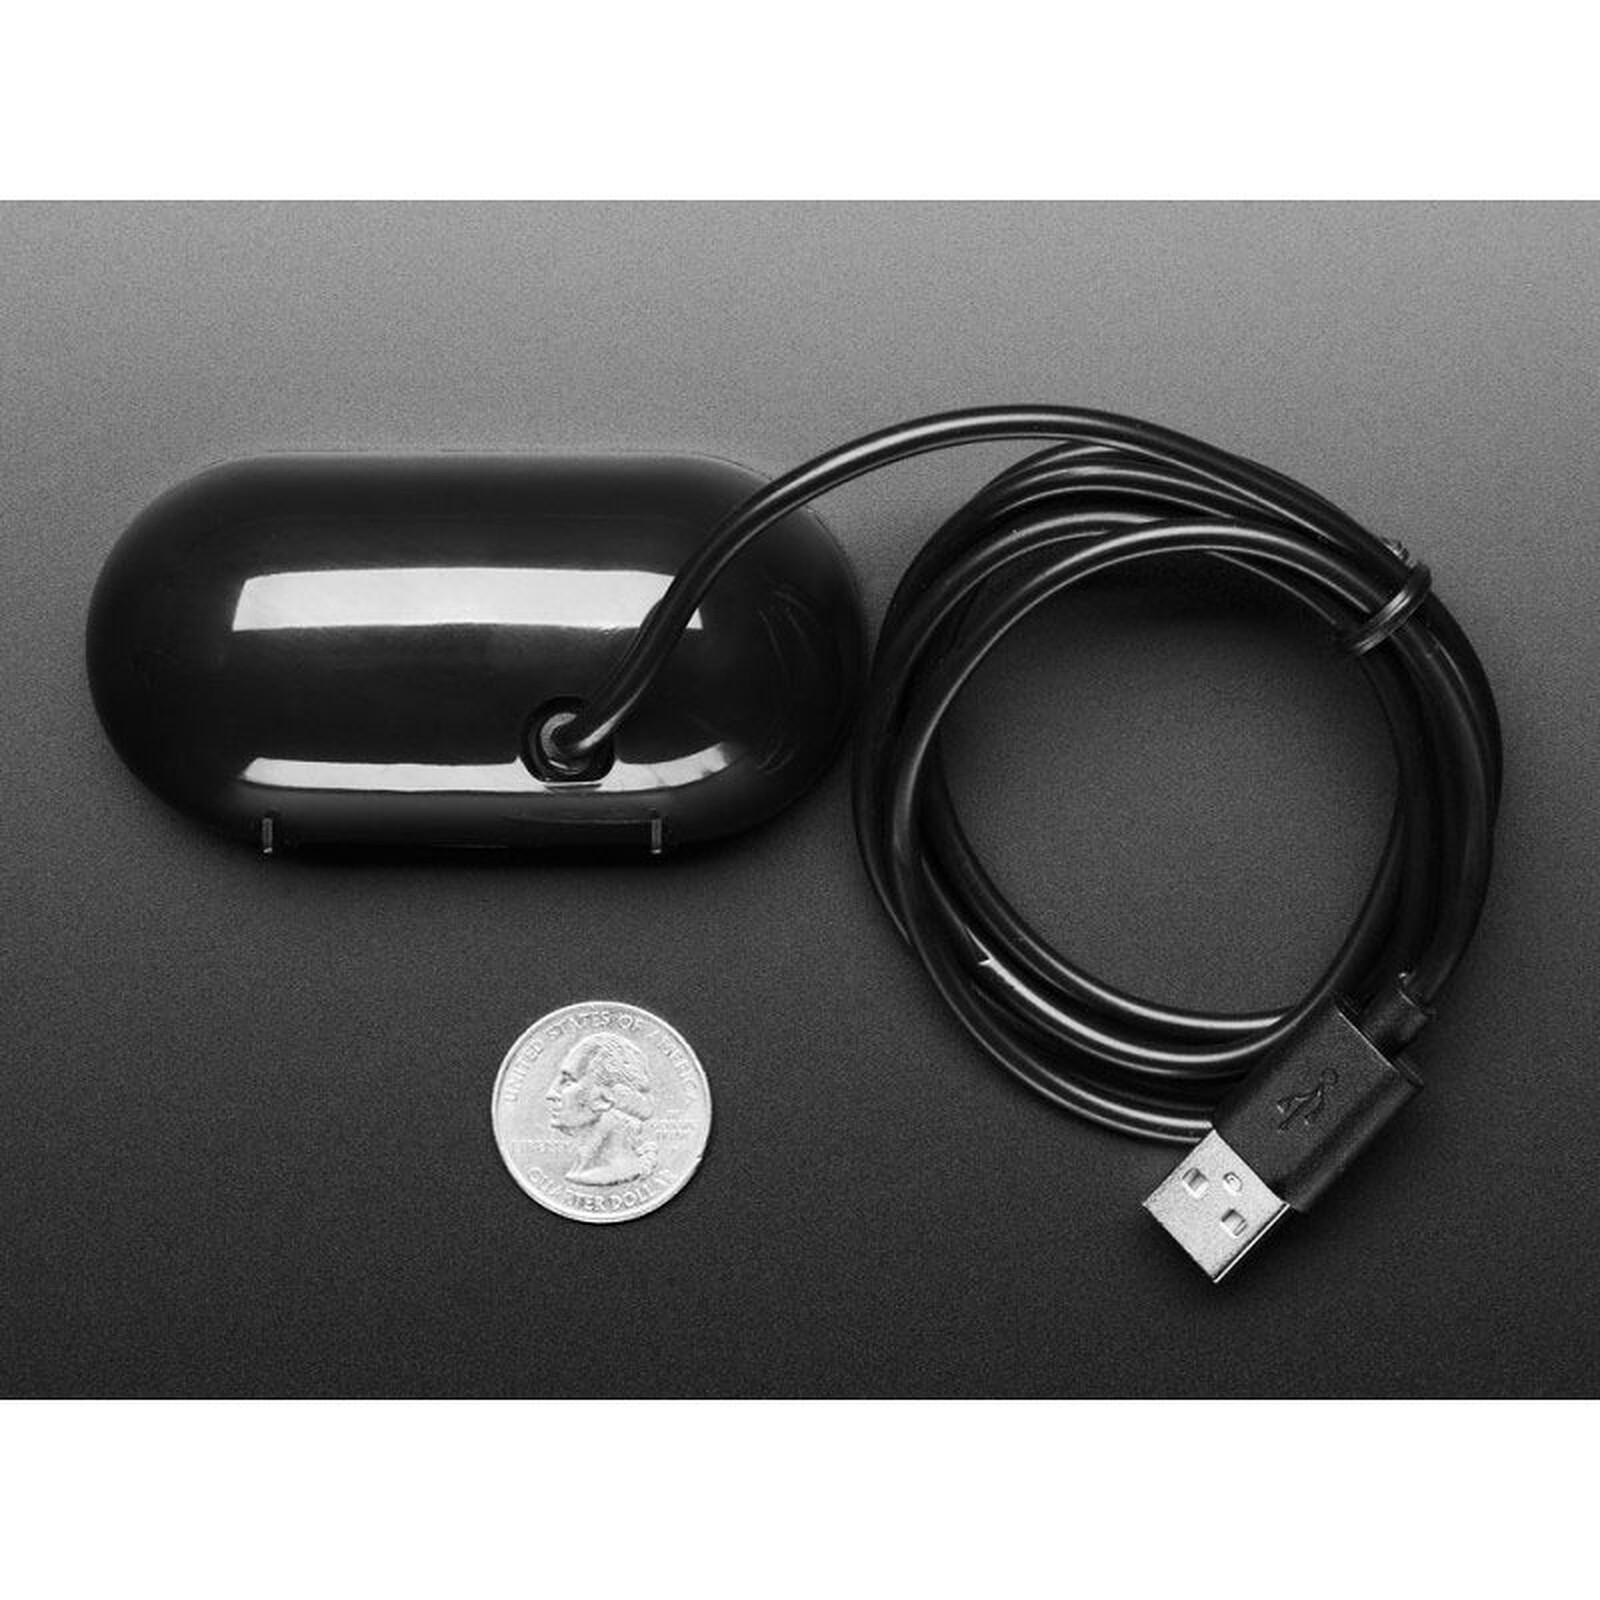 Minialtavozs USB - Altavoces PC - LDLC